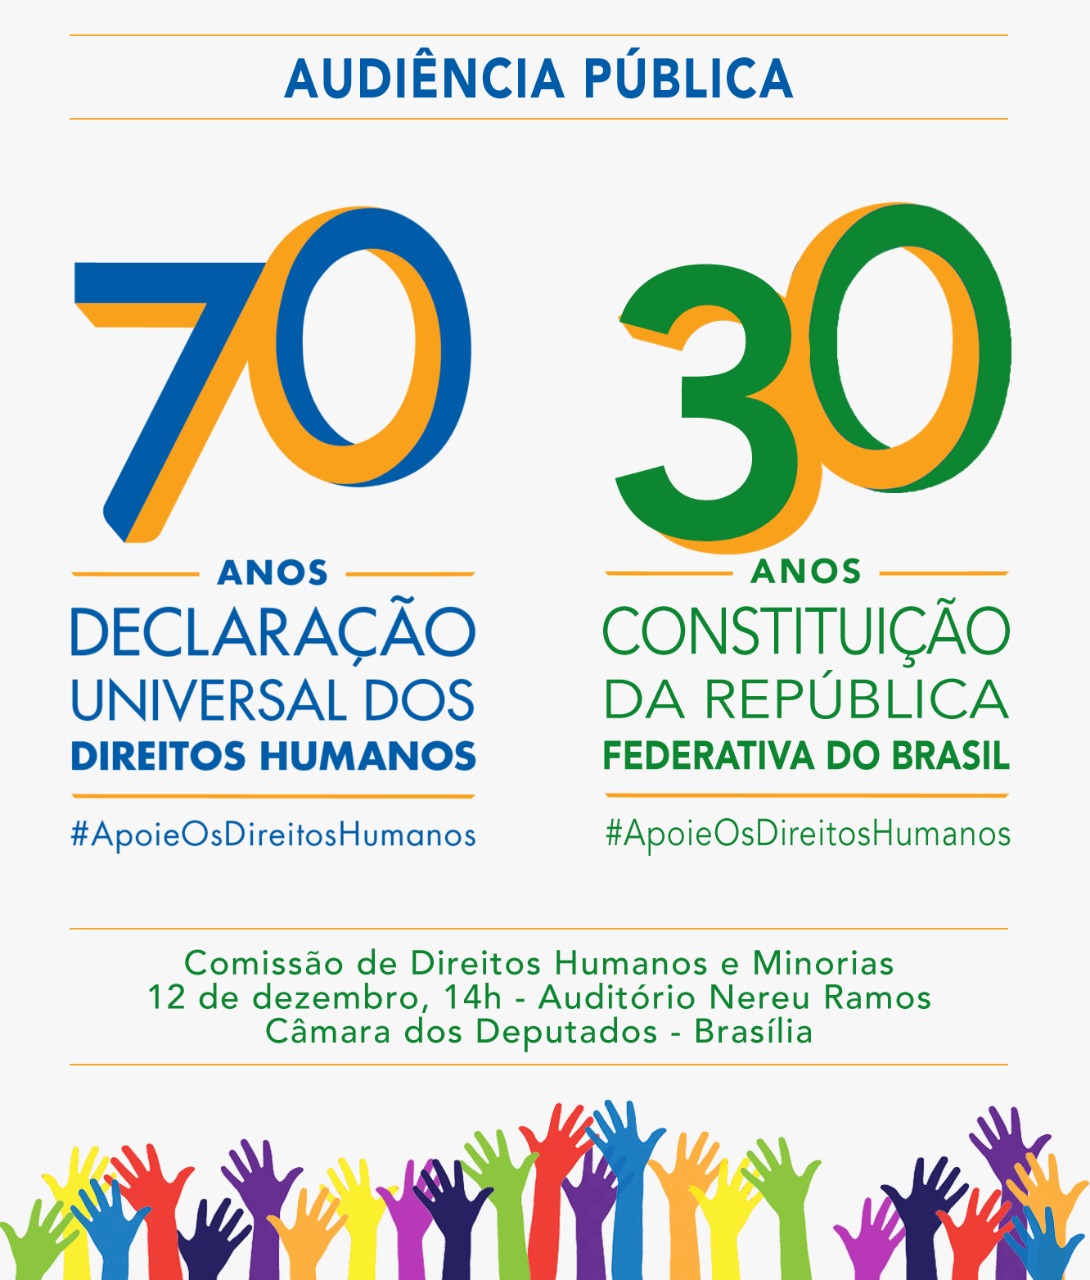 Nilmário Miranda e Paulo Vannuchi participam de audiência pública sobre os 70 anos da Declaração Universal dos Direitos Humanos 